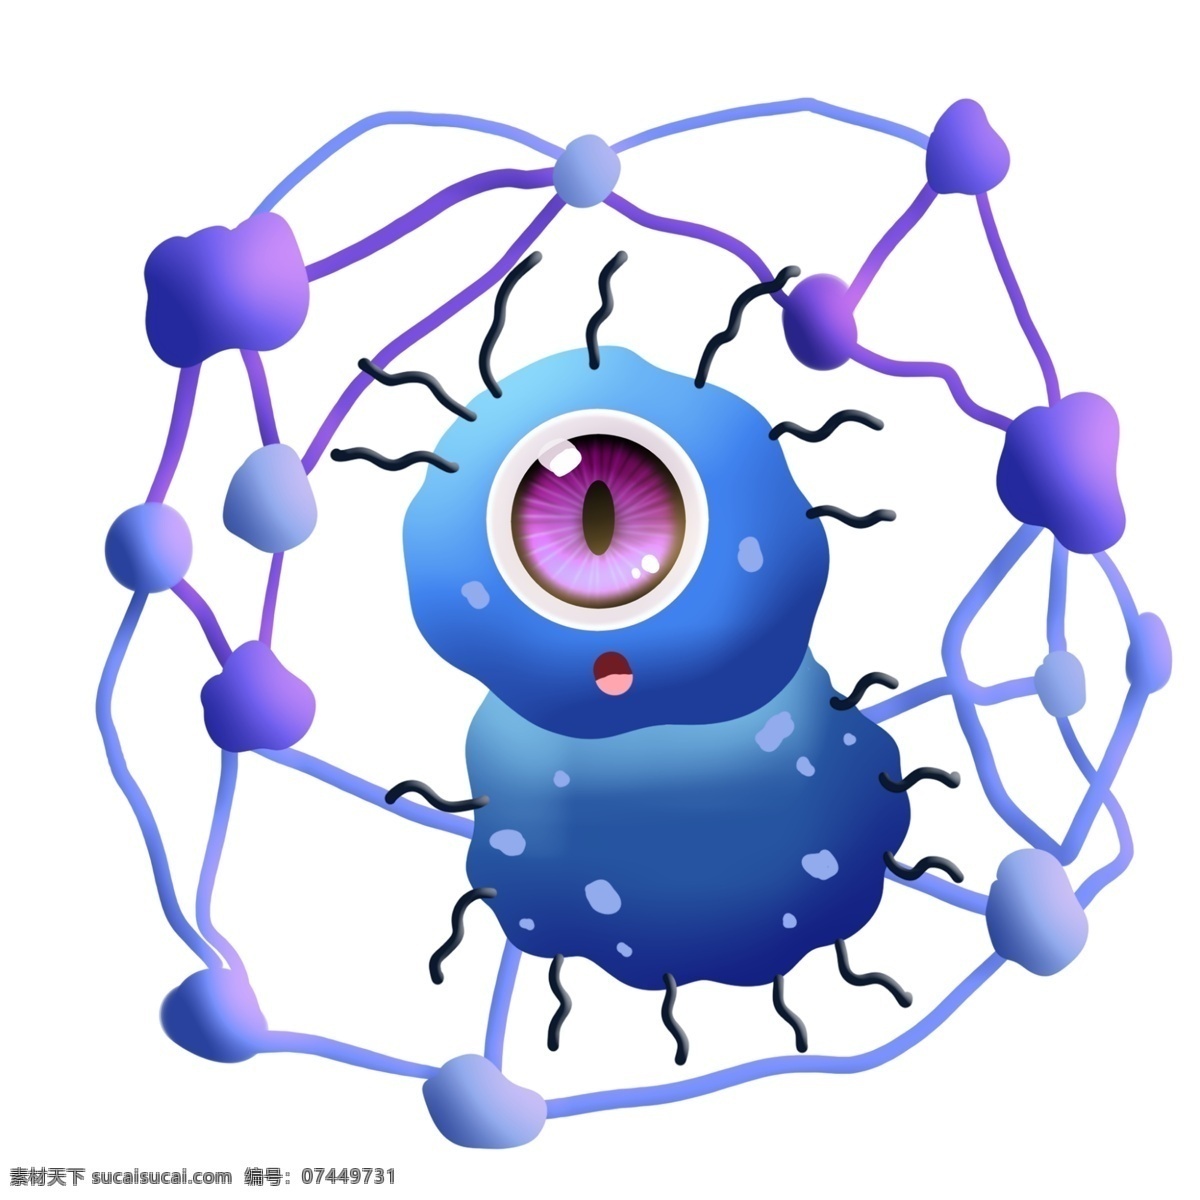 蓝色 独 眼 细菌 串联 细胞 卡通 独眼 斑点 大眼睛 圆点 串连 杆菌 病毒 医学 生物 疾病 生病 菌体 菌状